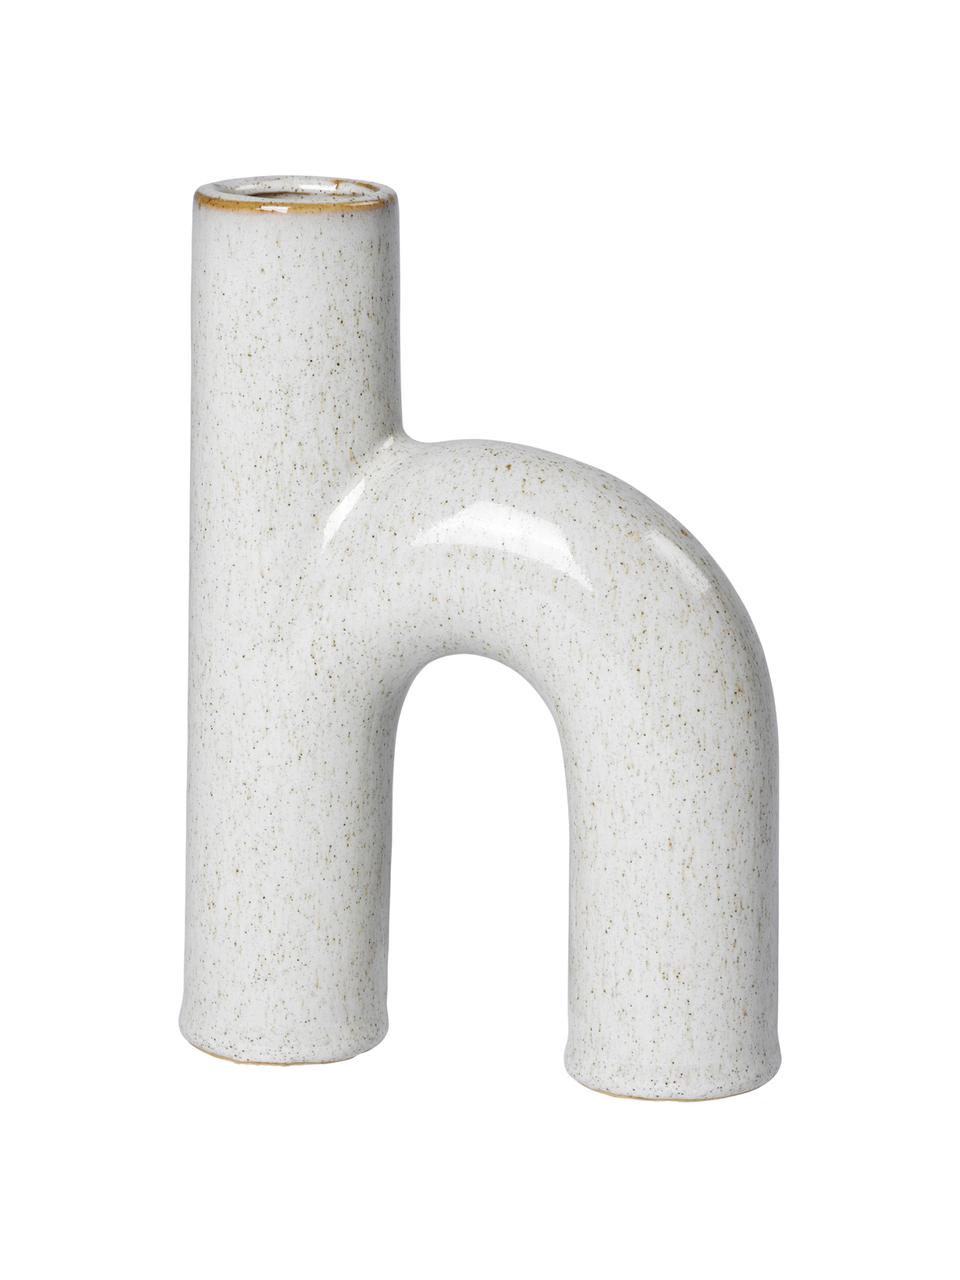 Design-Vase Hector aus Steingut, Steingut, Grau, B 13 cm x H 19 cm